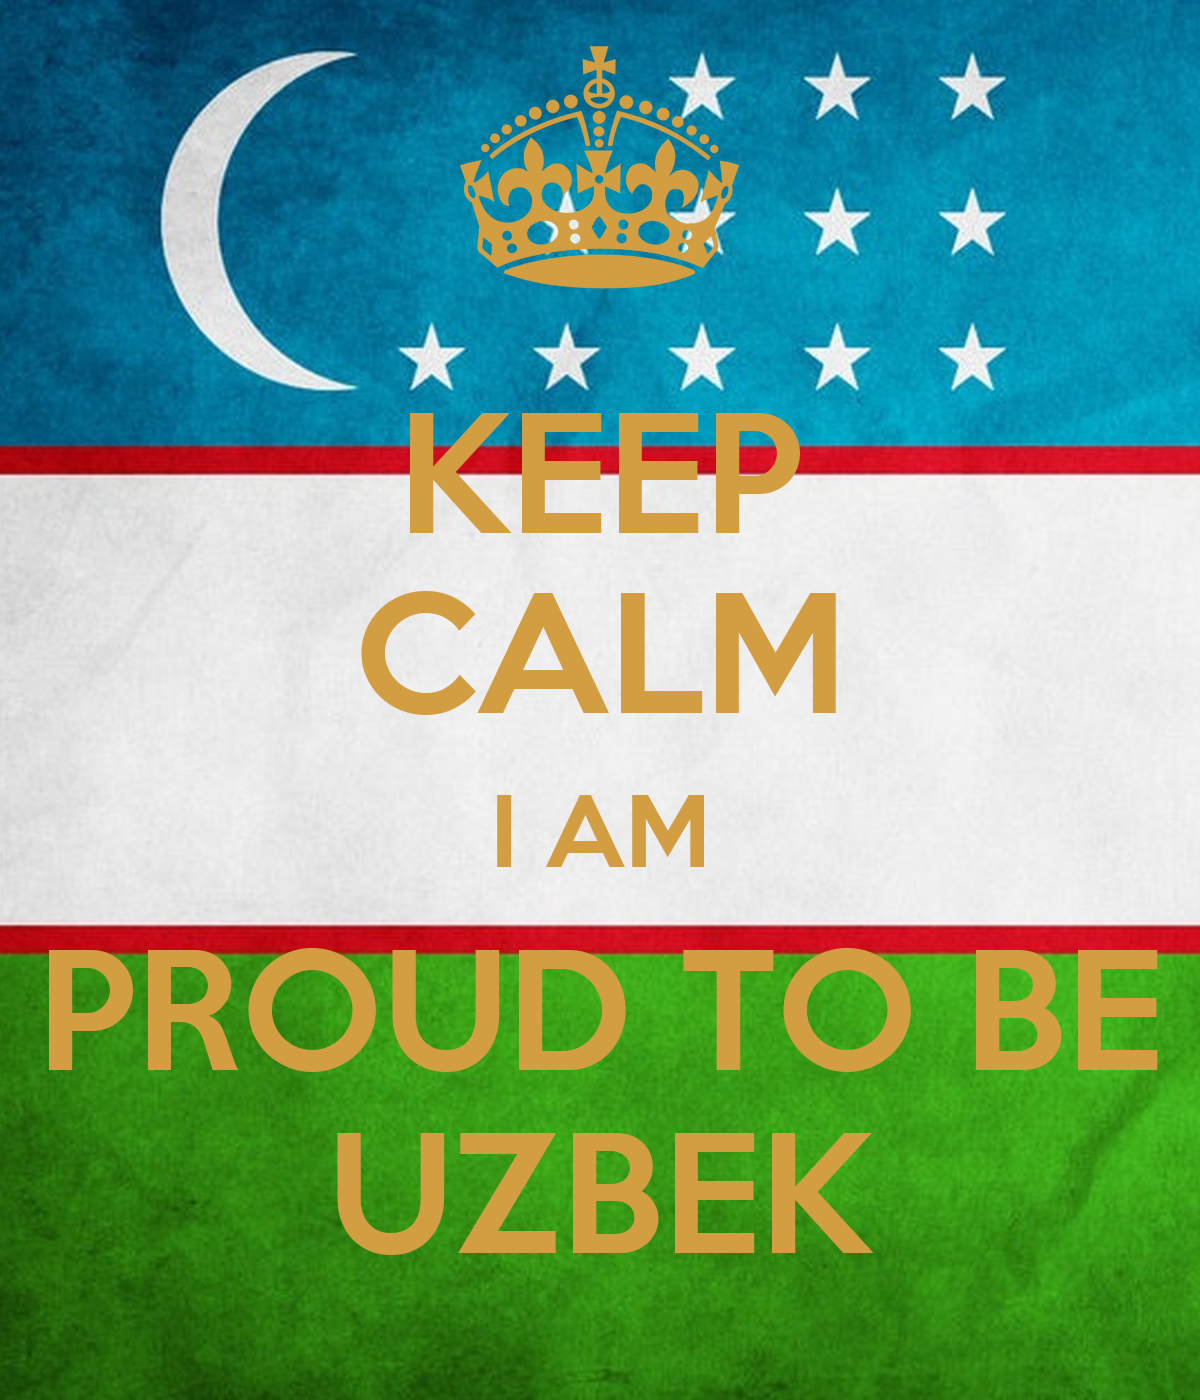 Uzb am. I am Uzbek. Proud to be Uzbek. Welcome to Uzbekistan плакат. Я узбек.